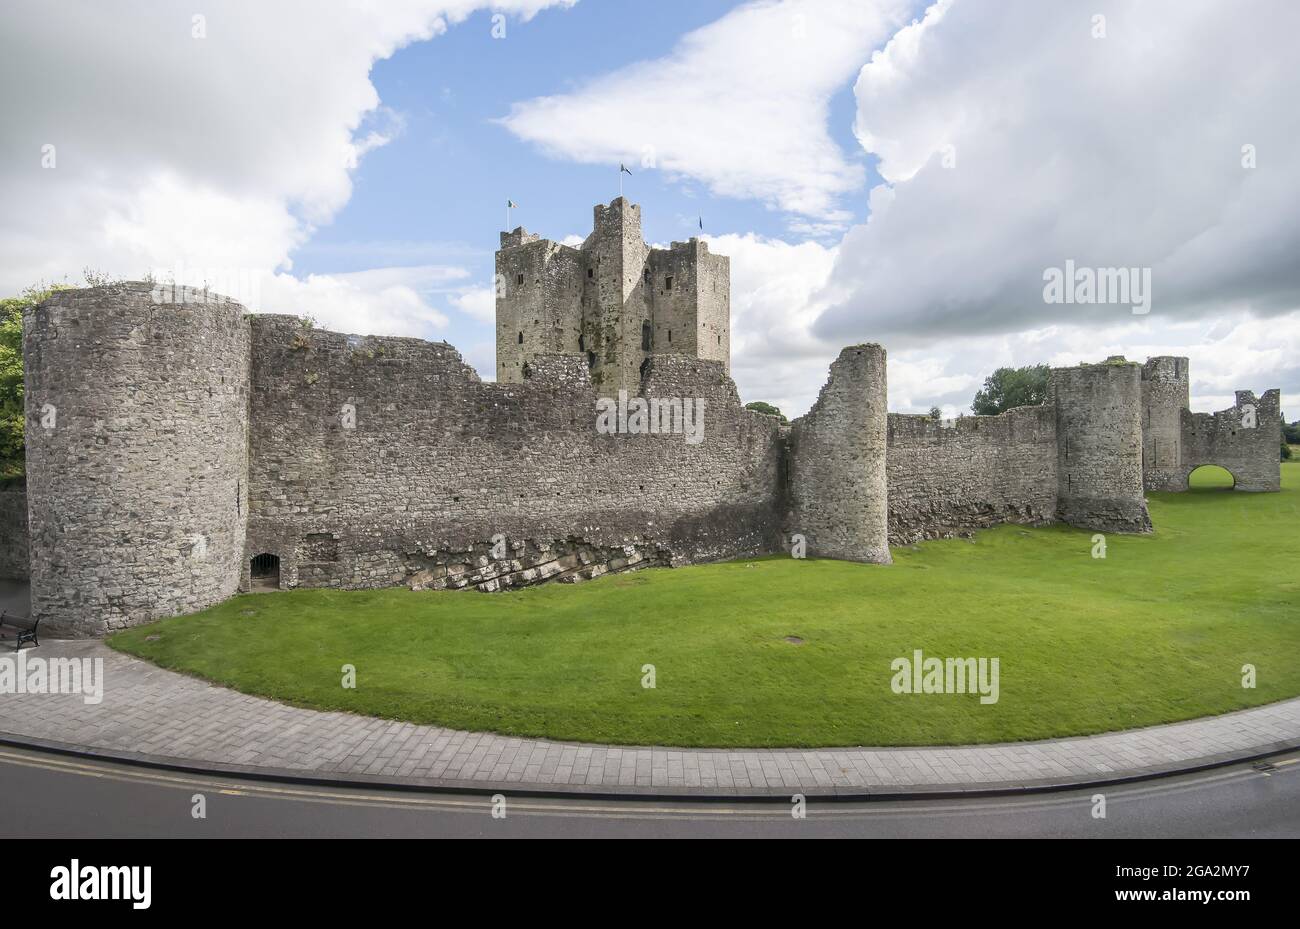 Die normannischen Ruinen von Trim Castle und das Gelände unter einem wolkigen, blauen Himmel; Trim, County Meath, Republik Irland Stockfoto